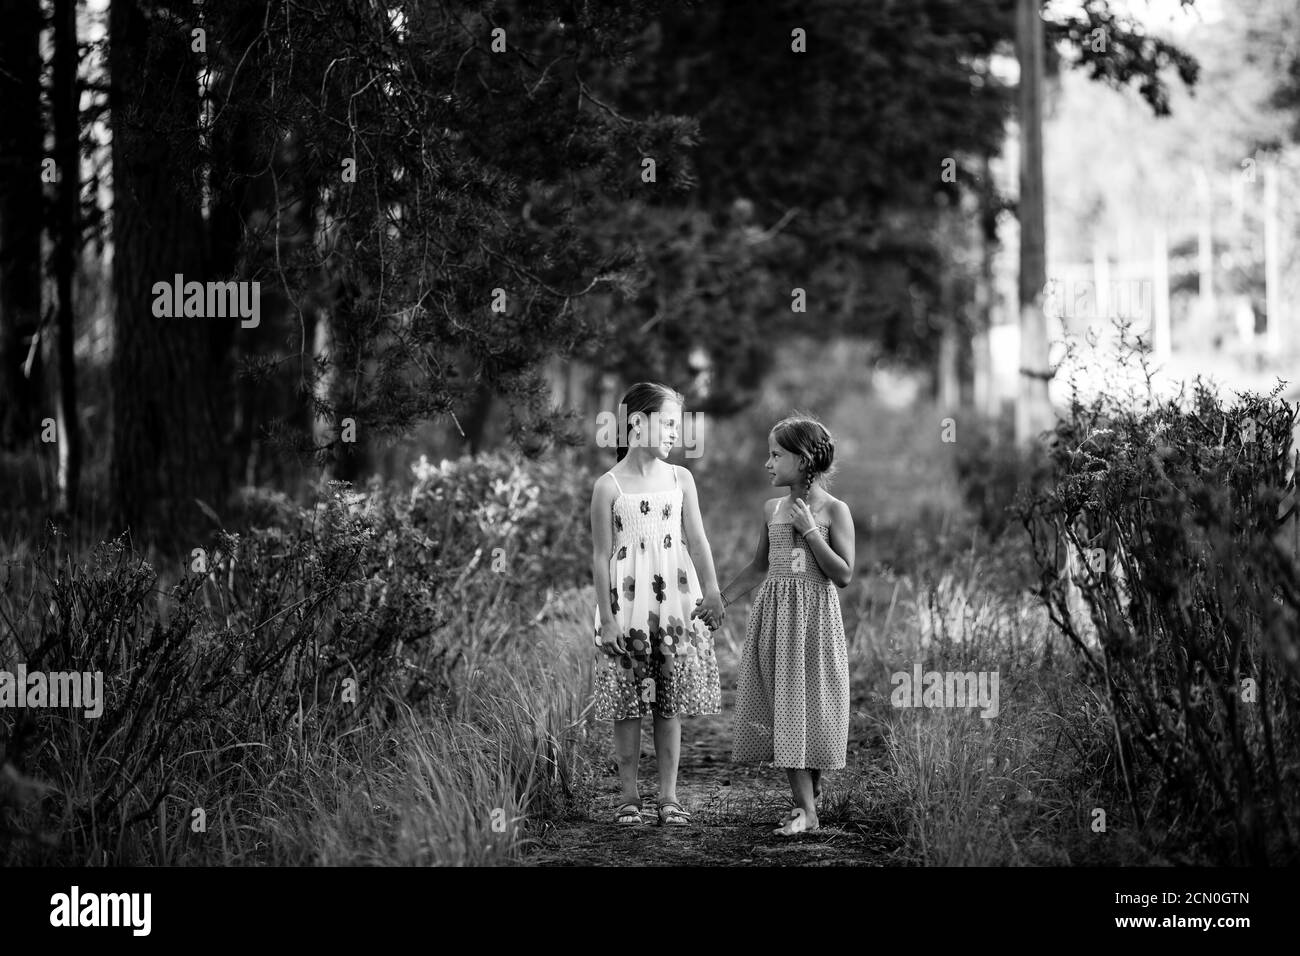 Deux filles de dix ans marchent dans le parc. Photo en noir et blanc. Banque D'Images